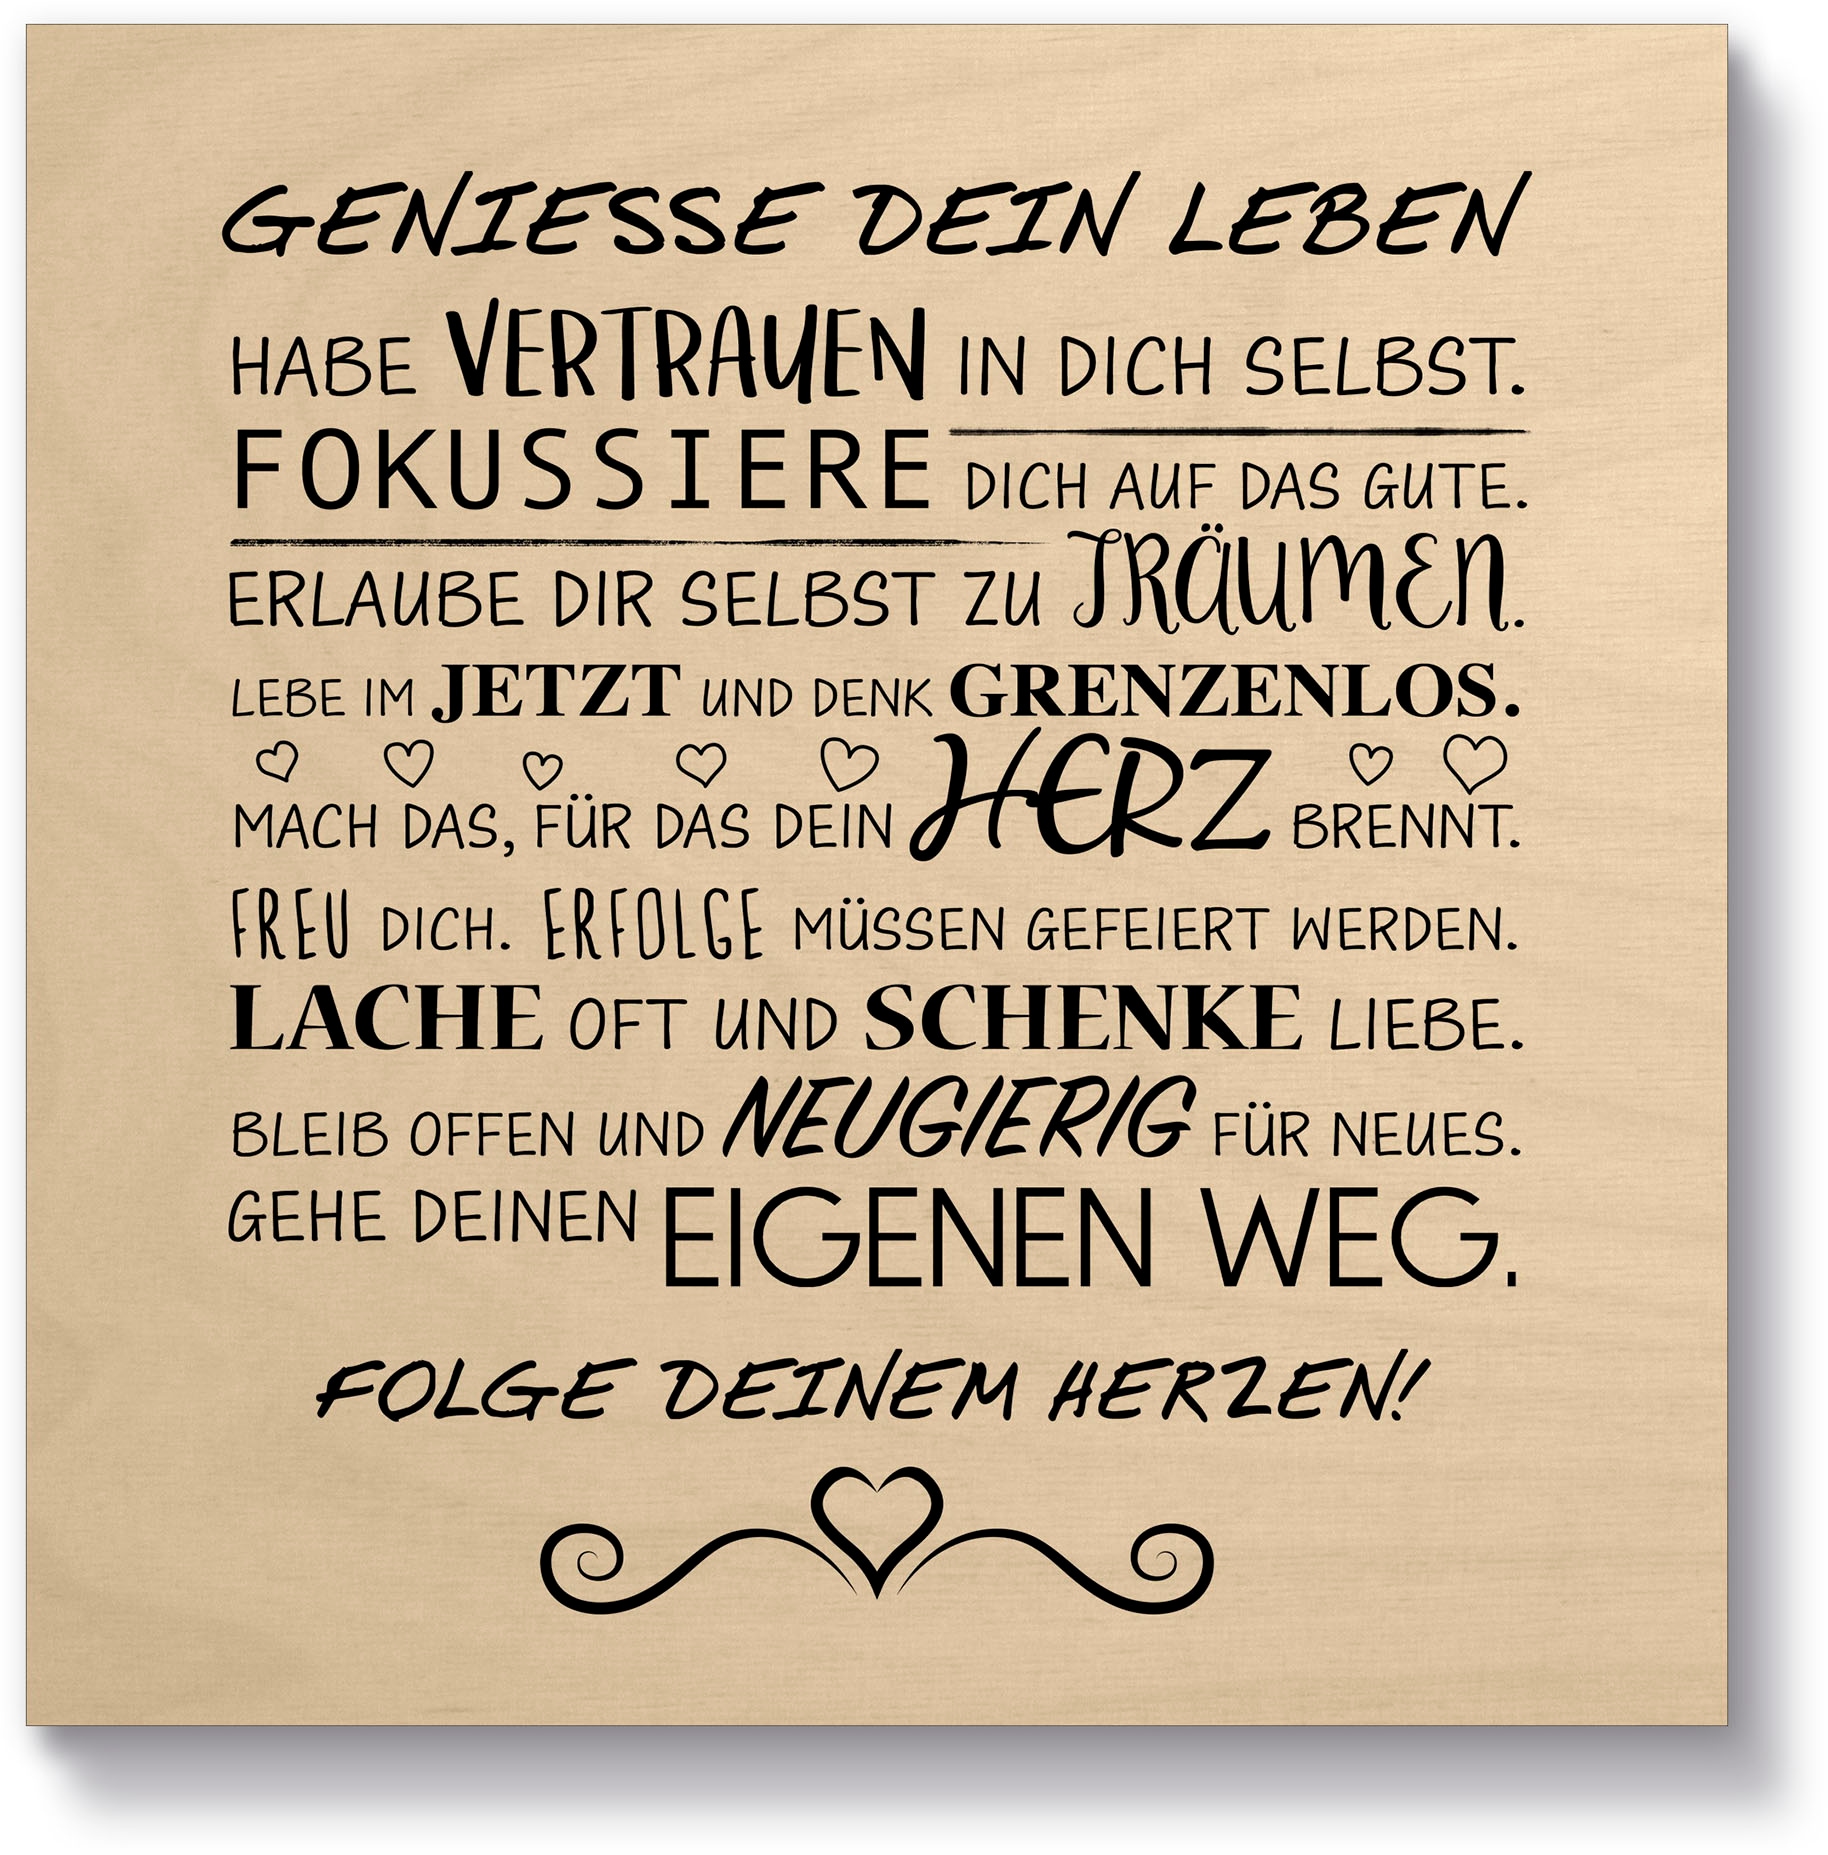 Artland Holzbild »Geniesse dein Leben«, Sprüche & Texte, (1 St.)